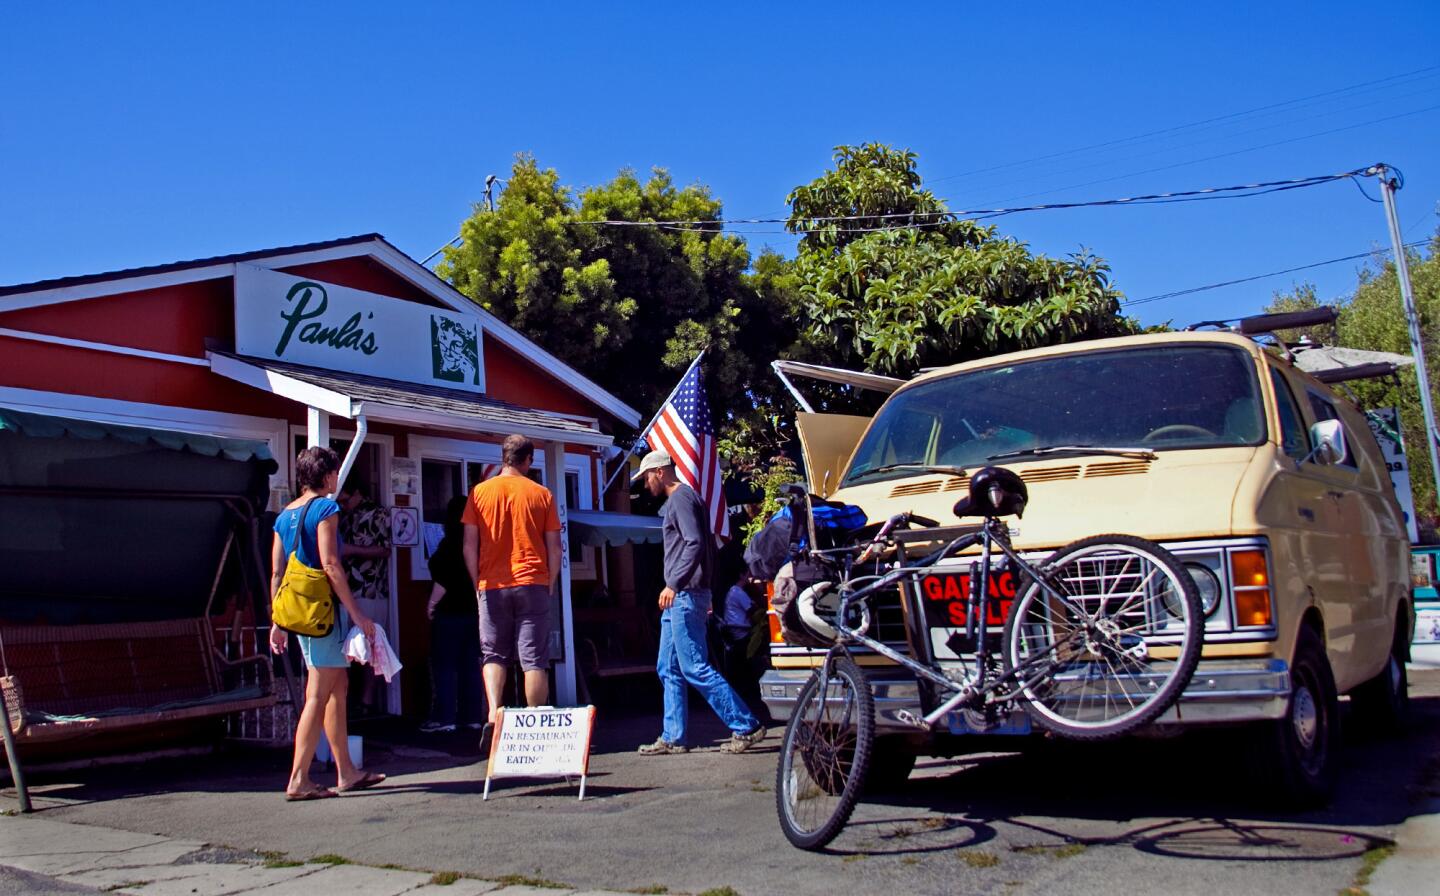 Paula's restaurant, Santa Cruz